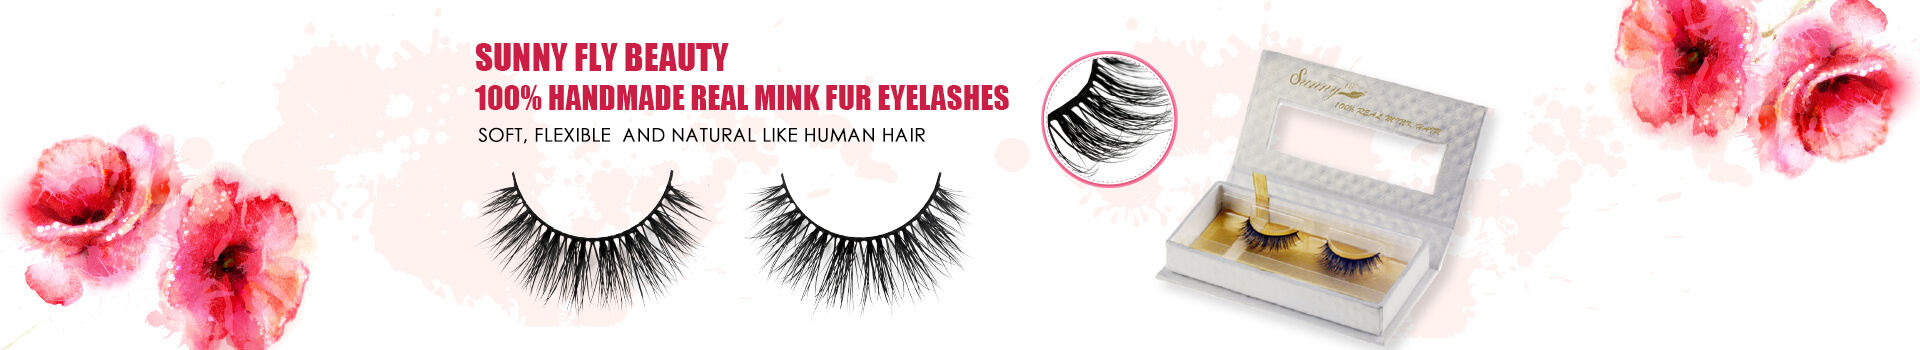 Siberian Mink Fur Eyelashes